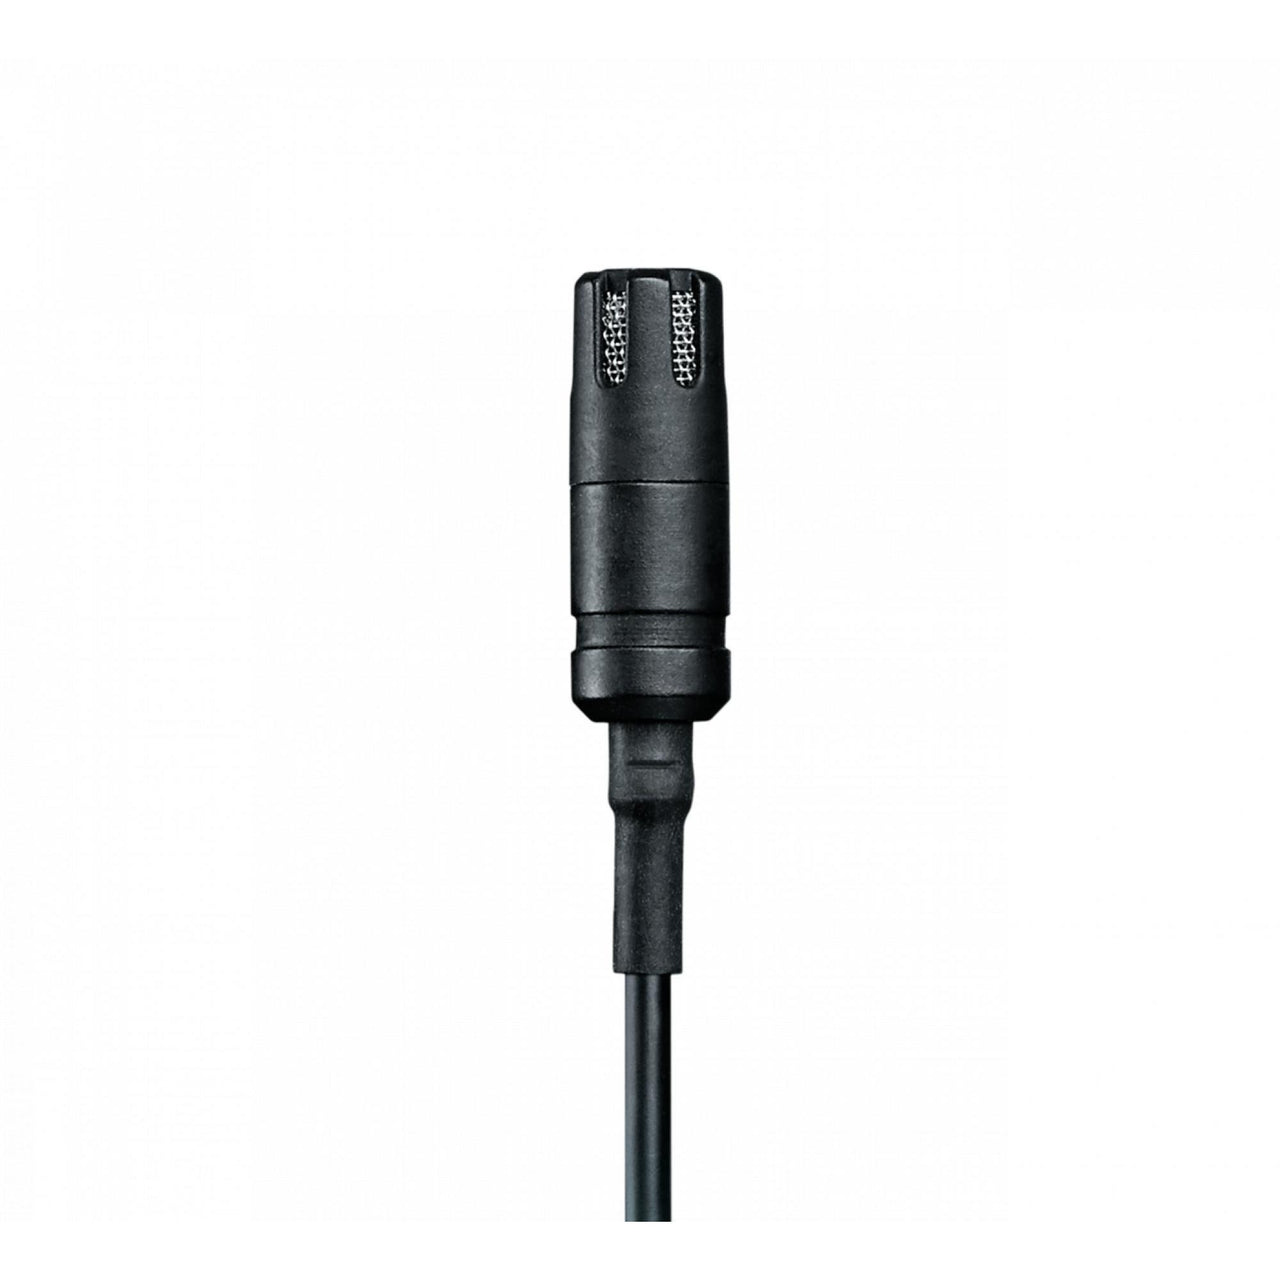 Microfono Shure De Condensador Omnidireccional De Solapa, Mvl-3.5mm